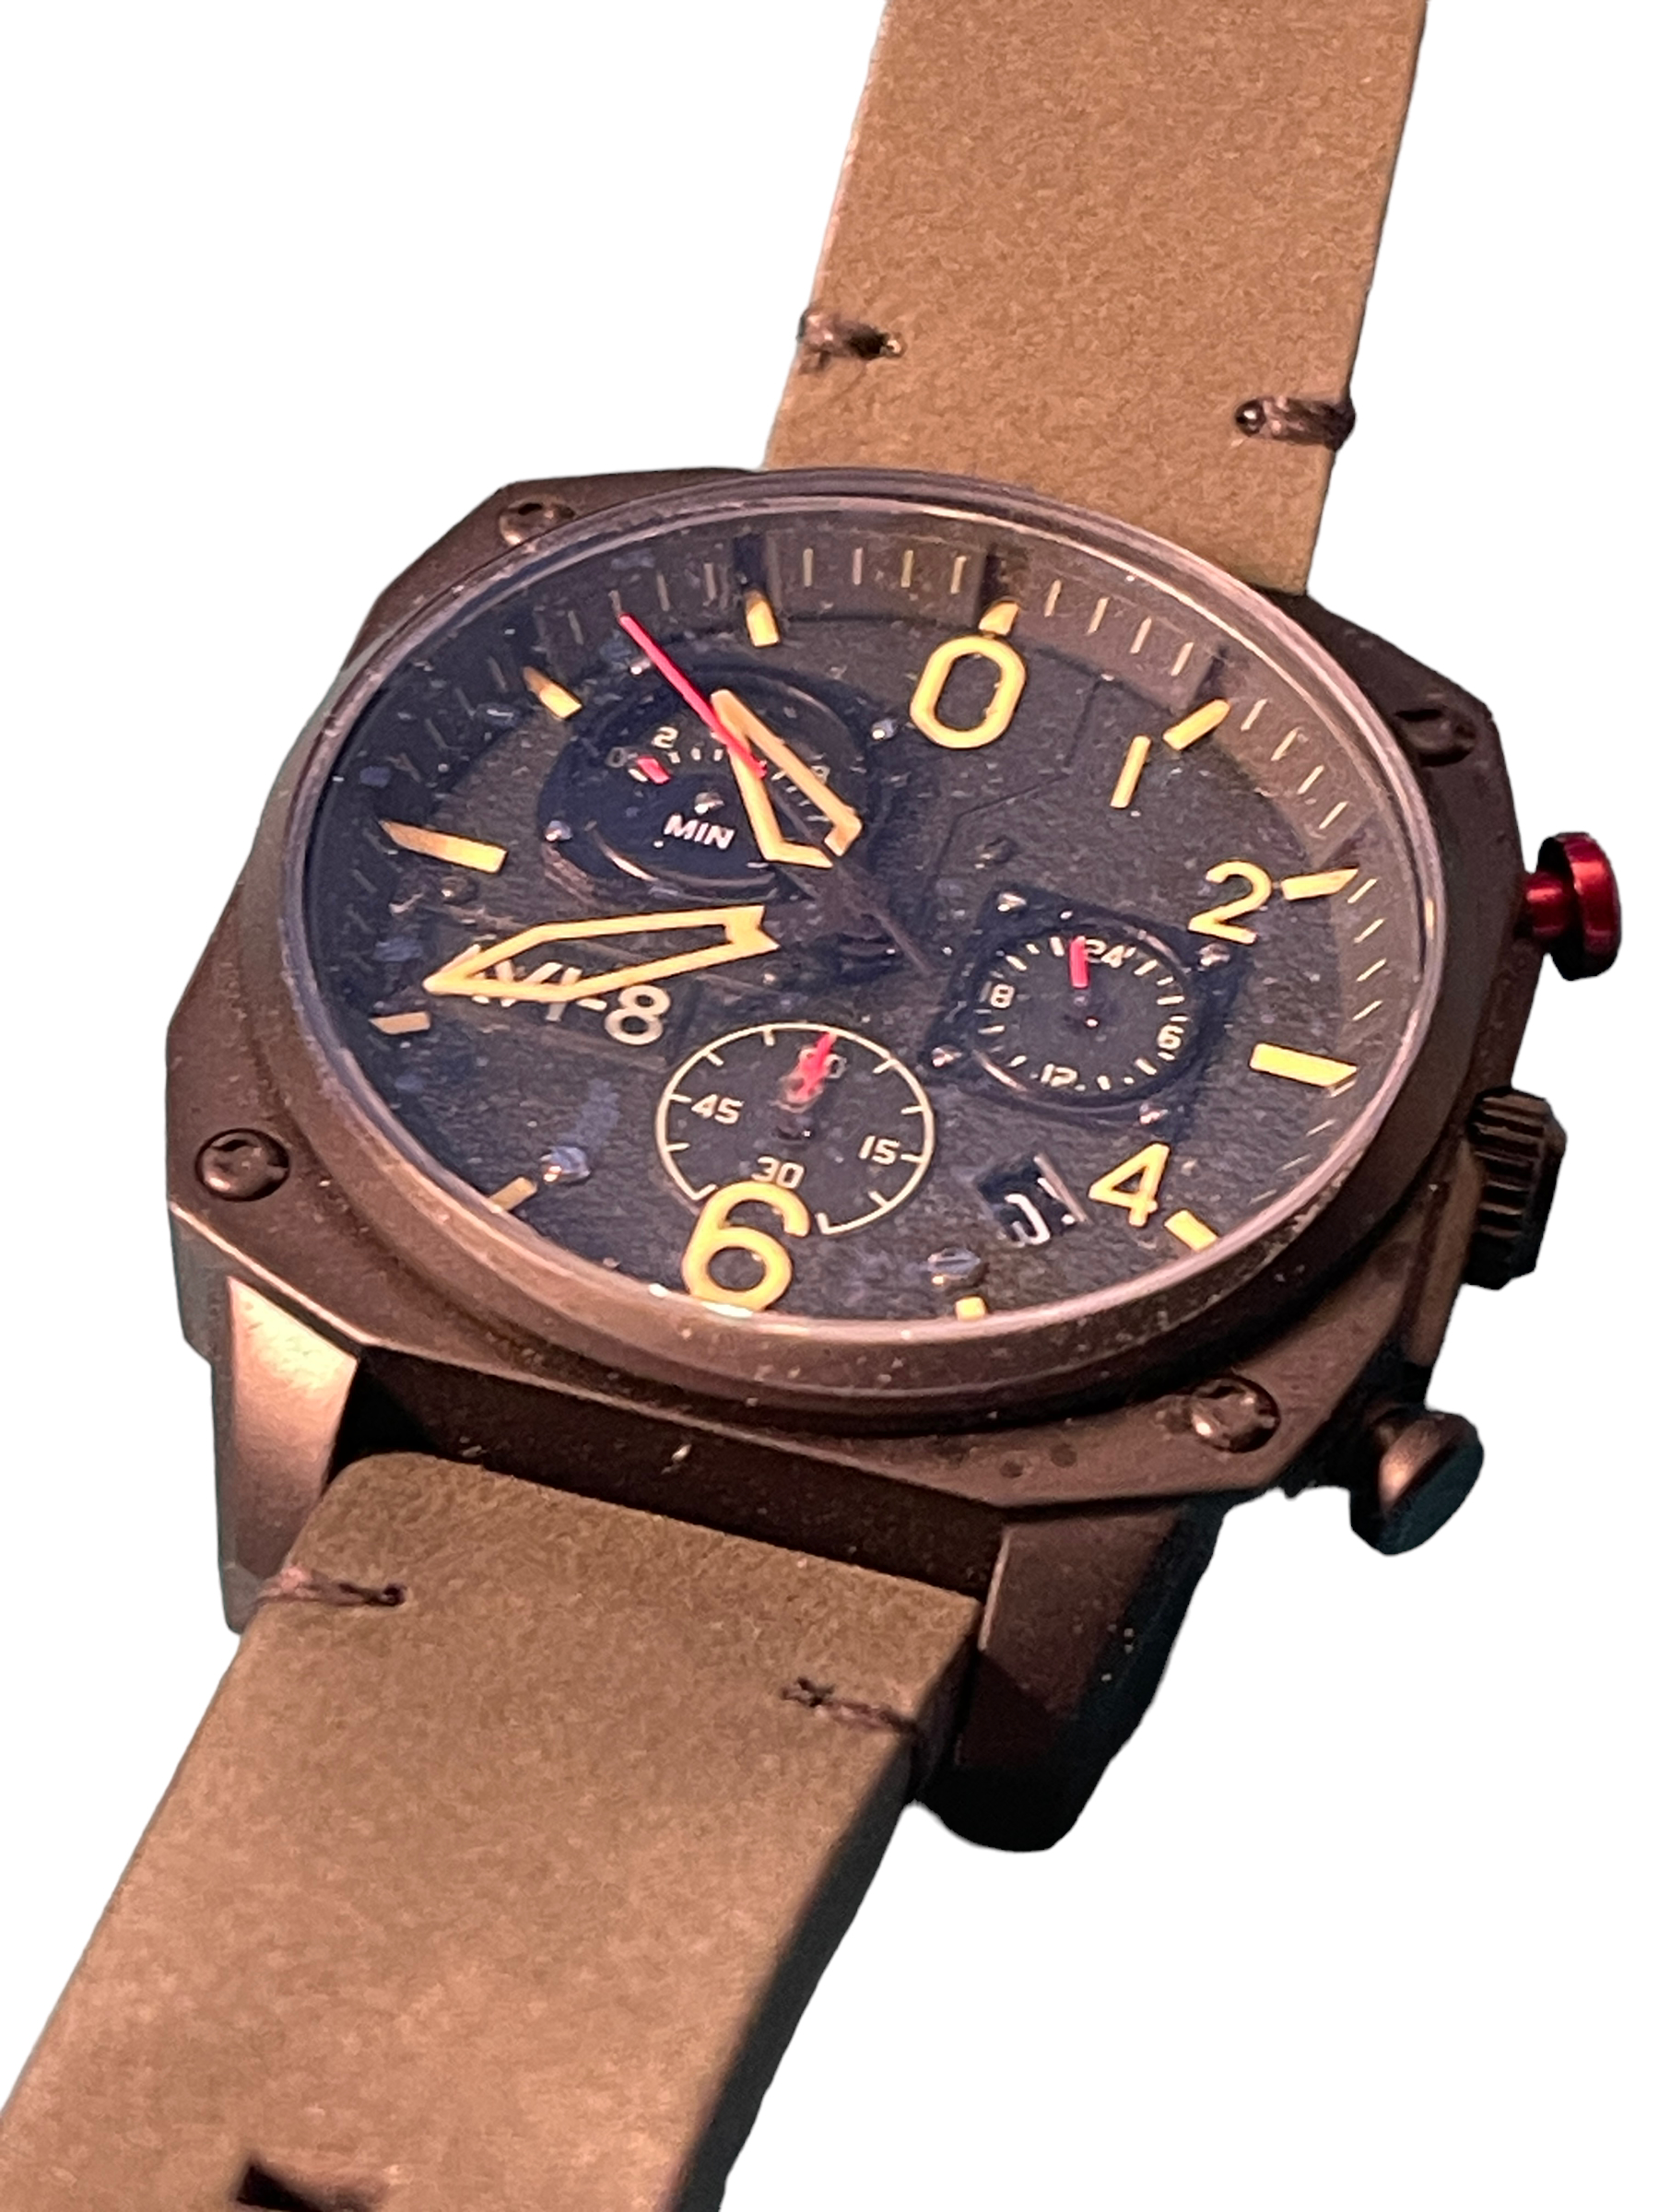 Av-8 men's aviation dial instrument watch - Image 3 of 4